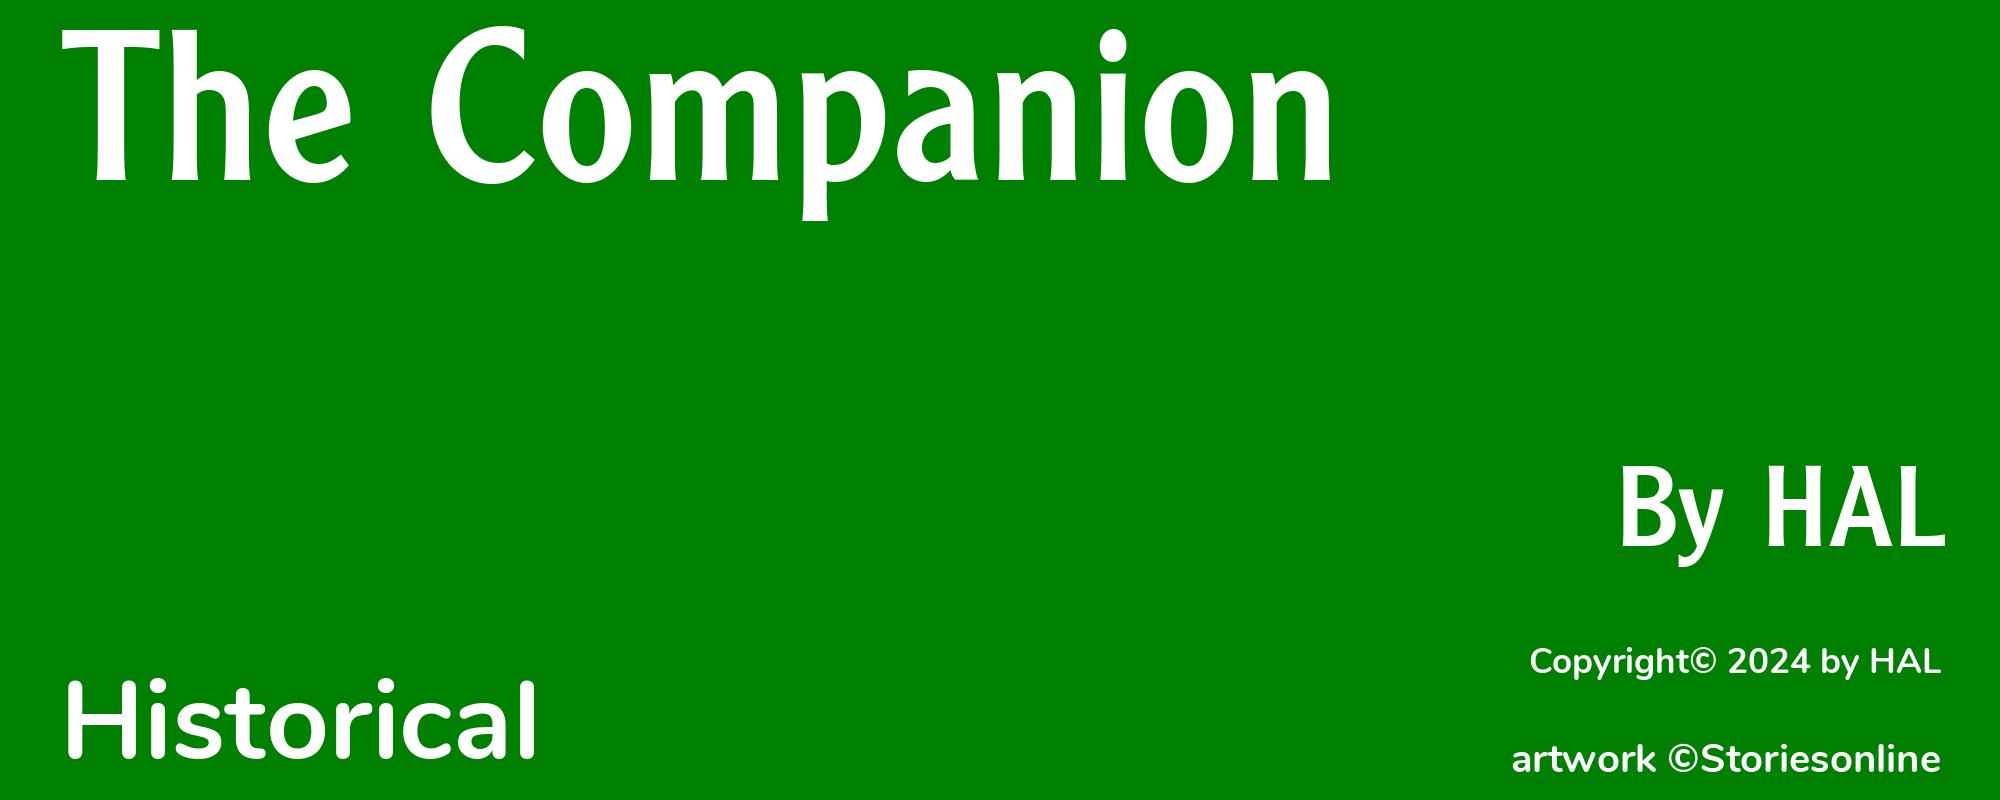 The Companion - Cover